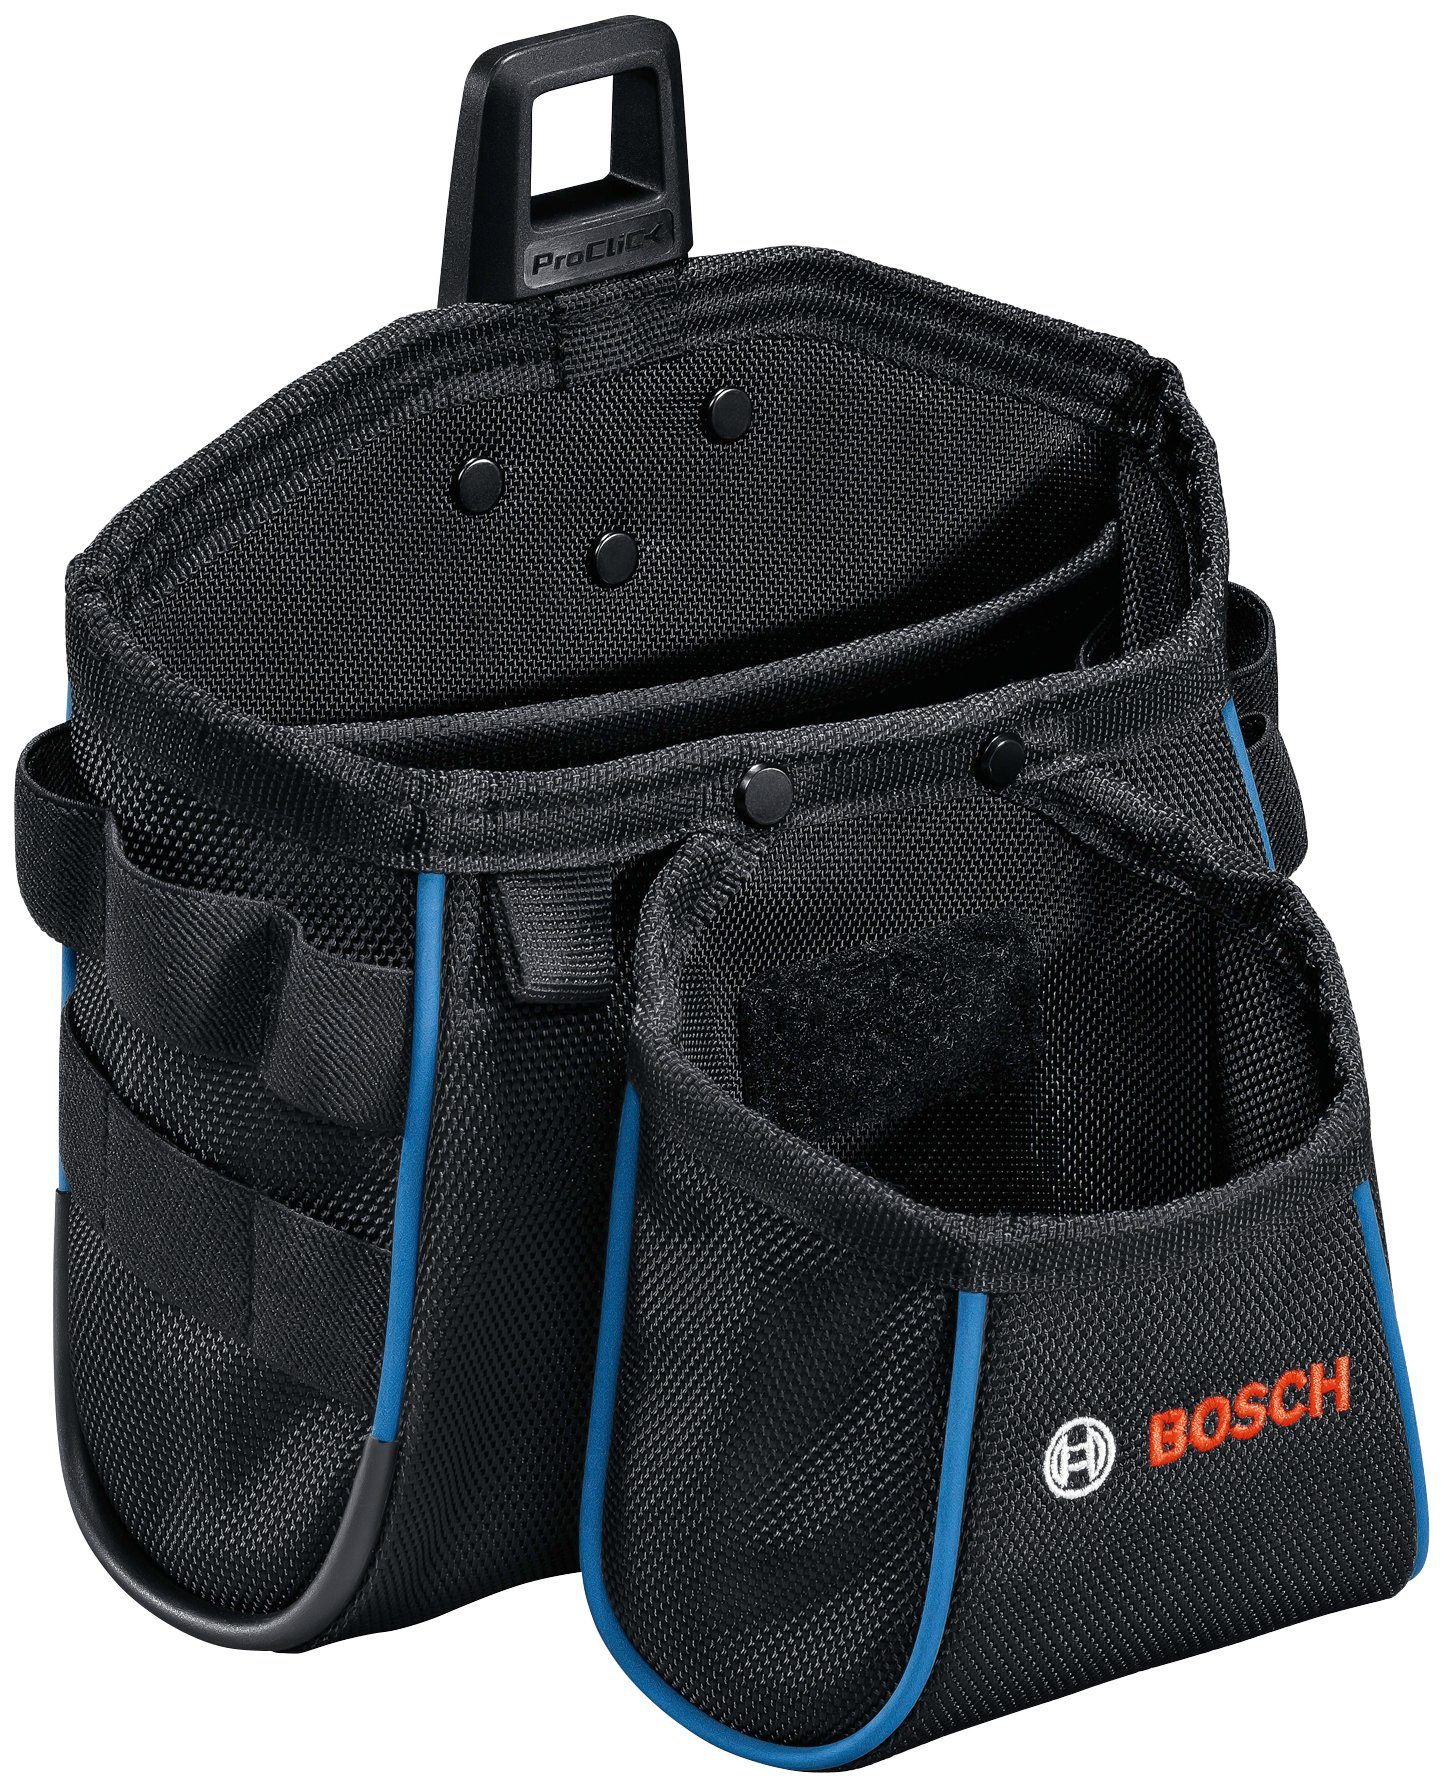 Bosch Professional Werkzeugtasche GWT online kaufen | OTTO